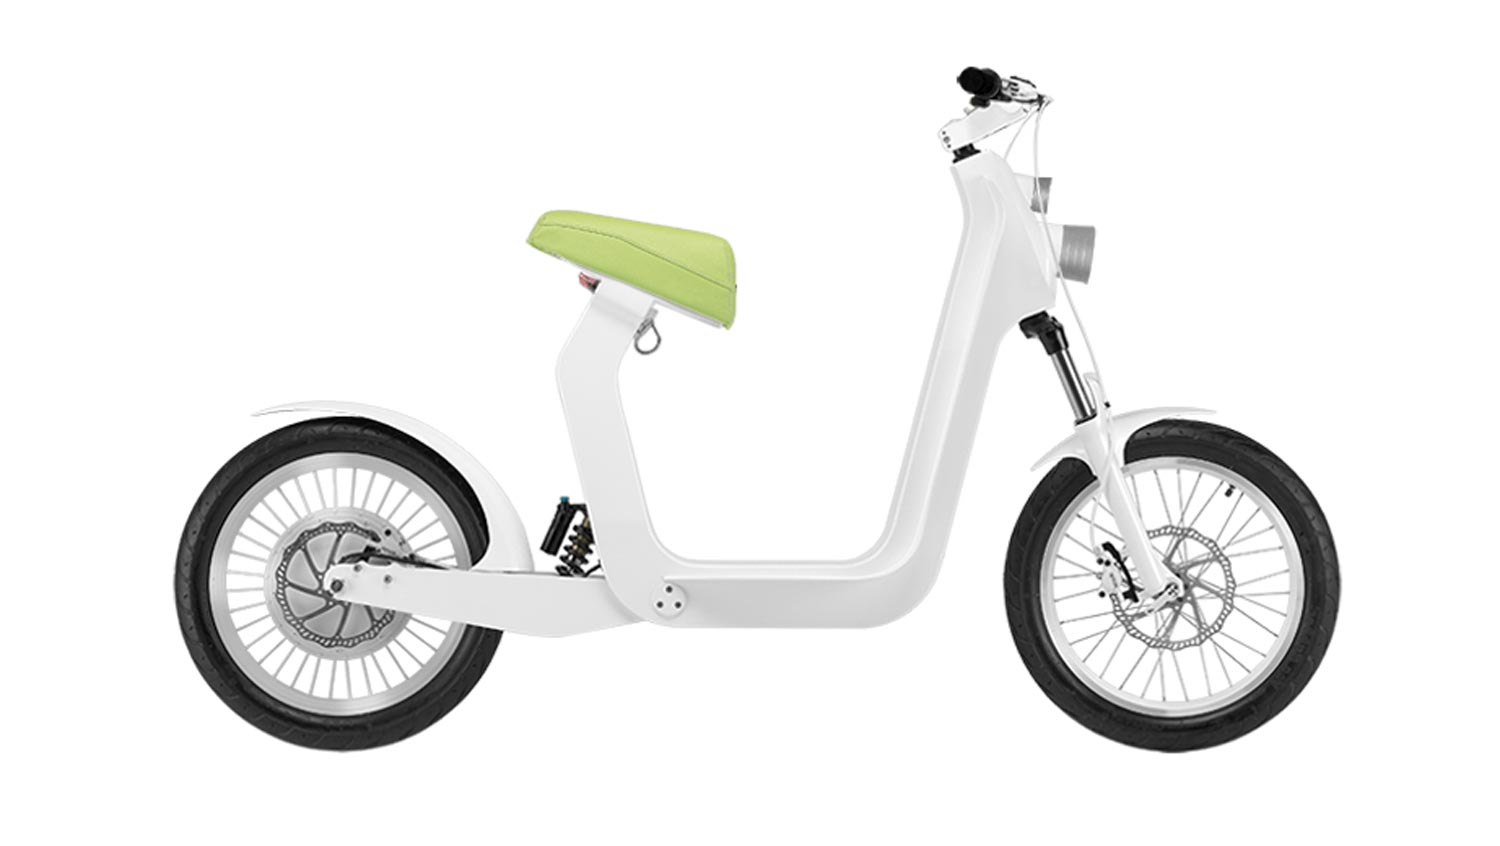 Xkuty One – Motosikal Elektrik Yang Direka Khas Untuk iPhone